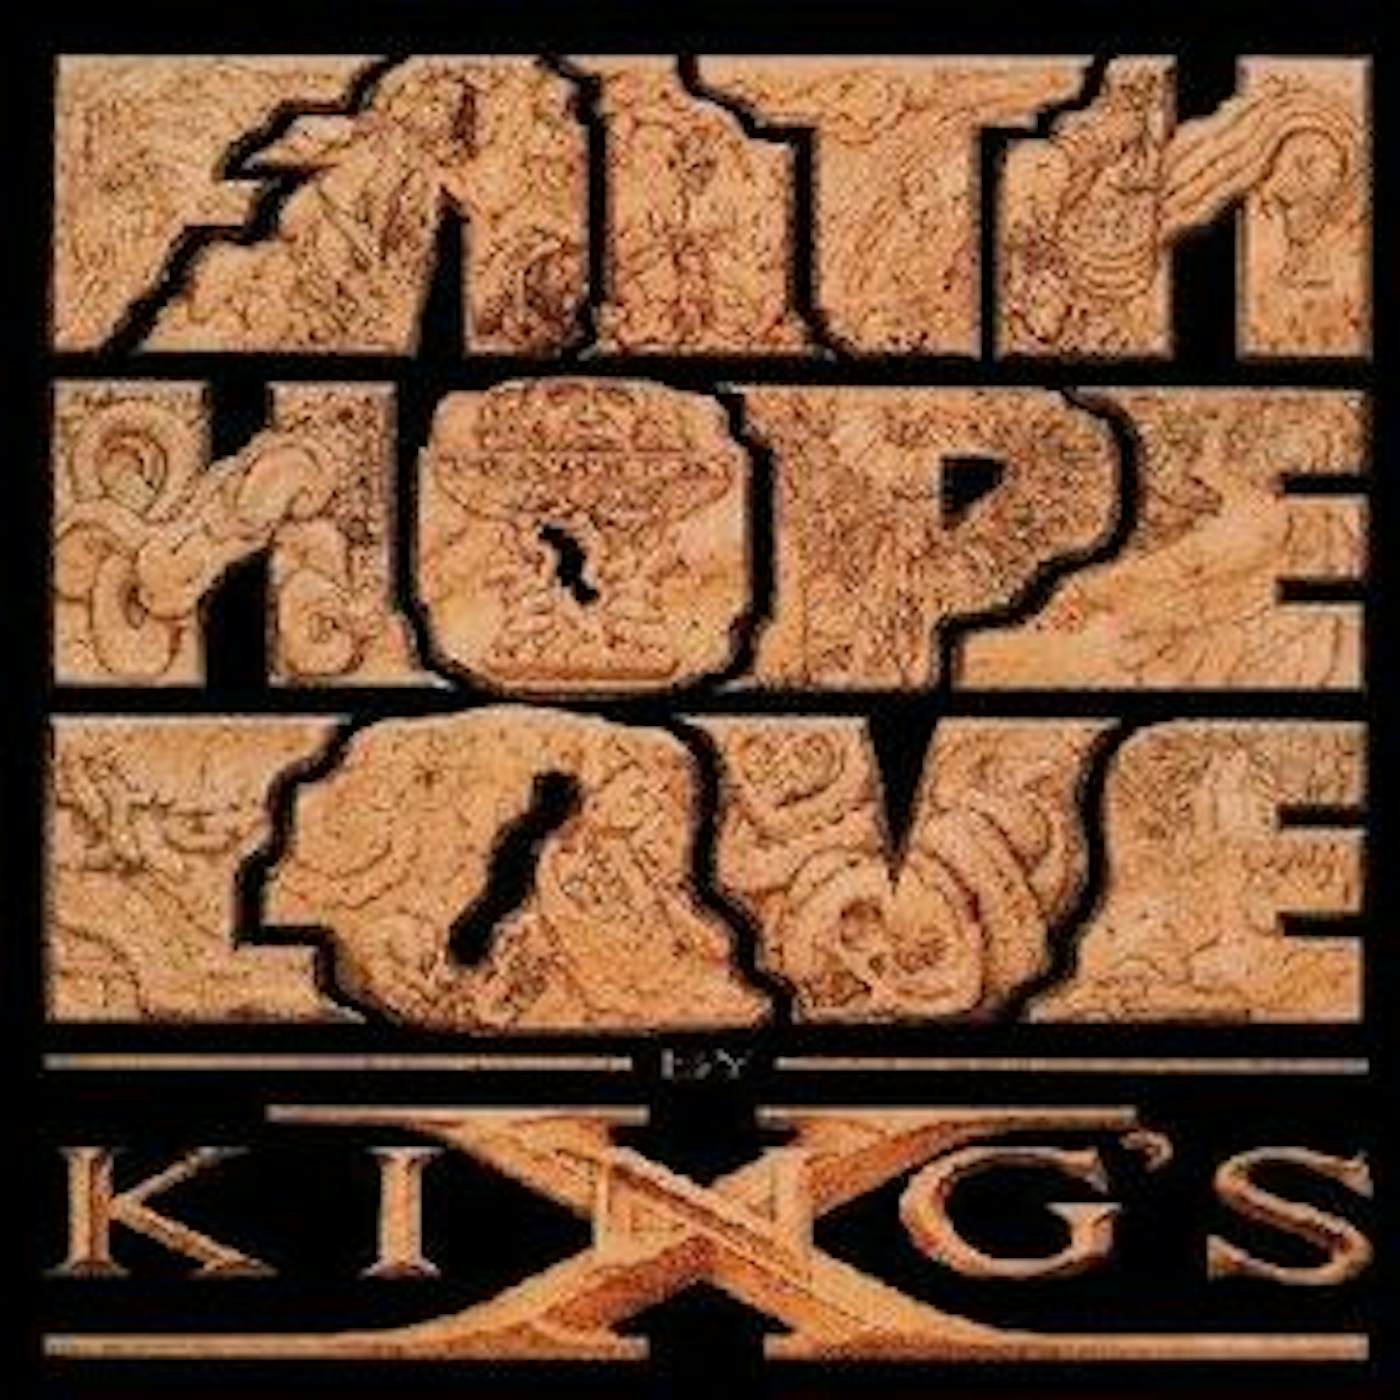 King's X Faith Hope Love Vinyl Record